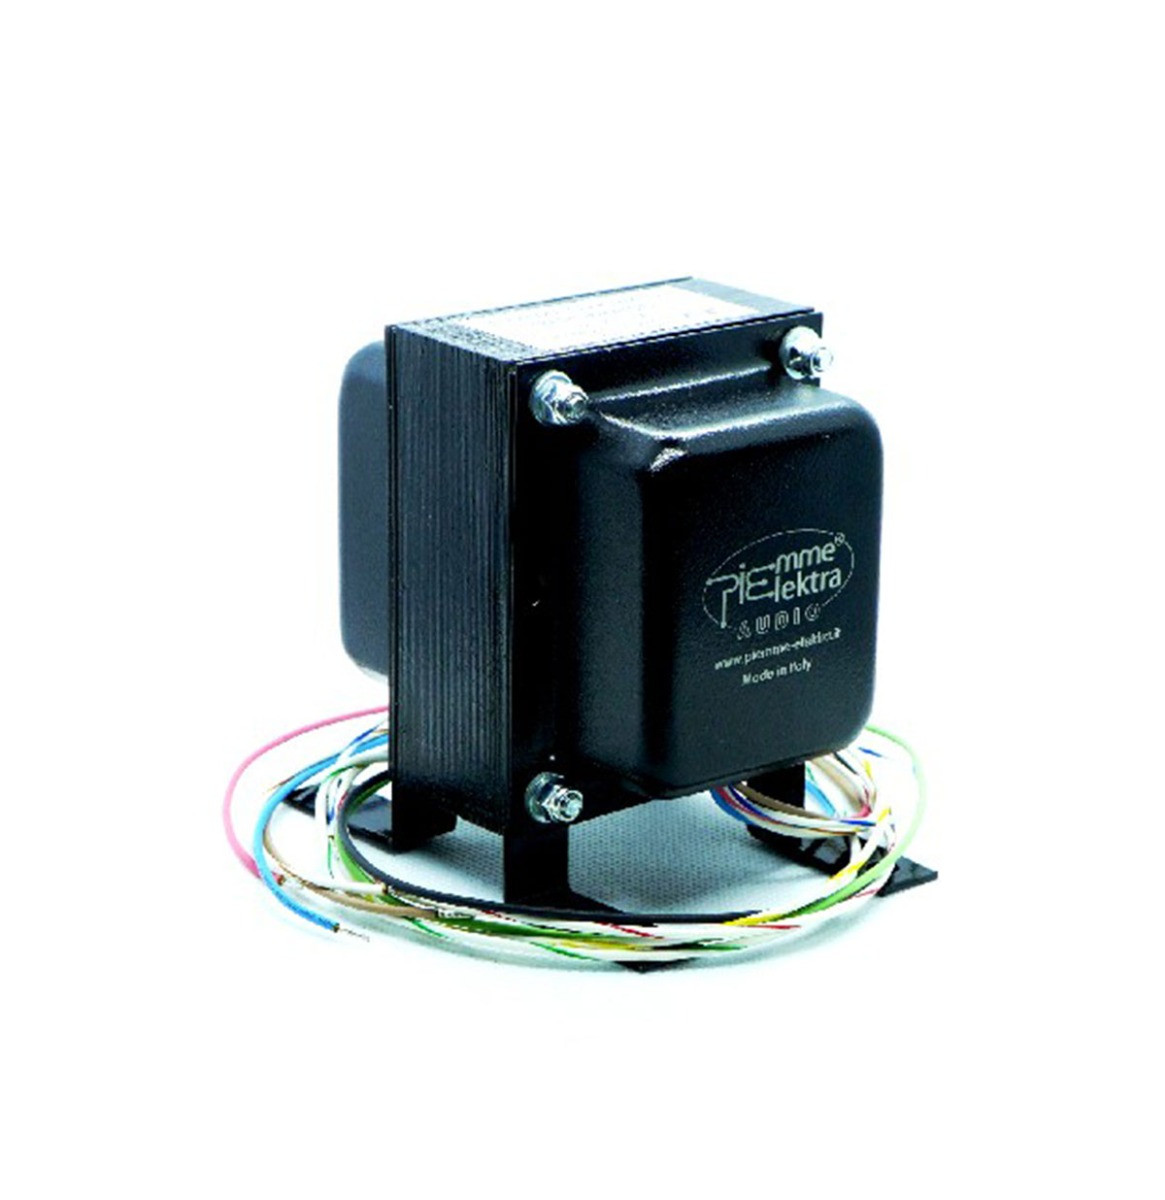 Piemme Elektra Voedings Transformator Voor AMI R145 Versterker L-533 (G, H, I, J)